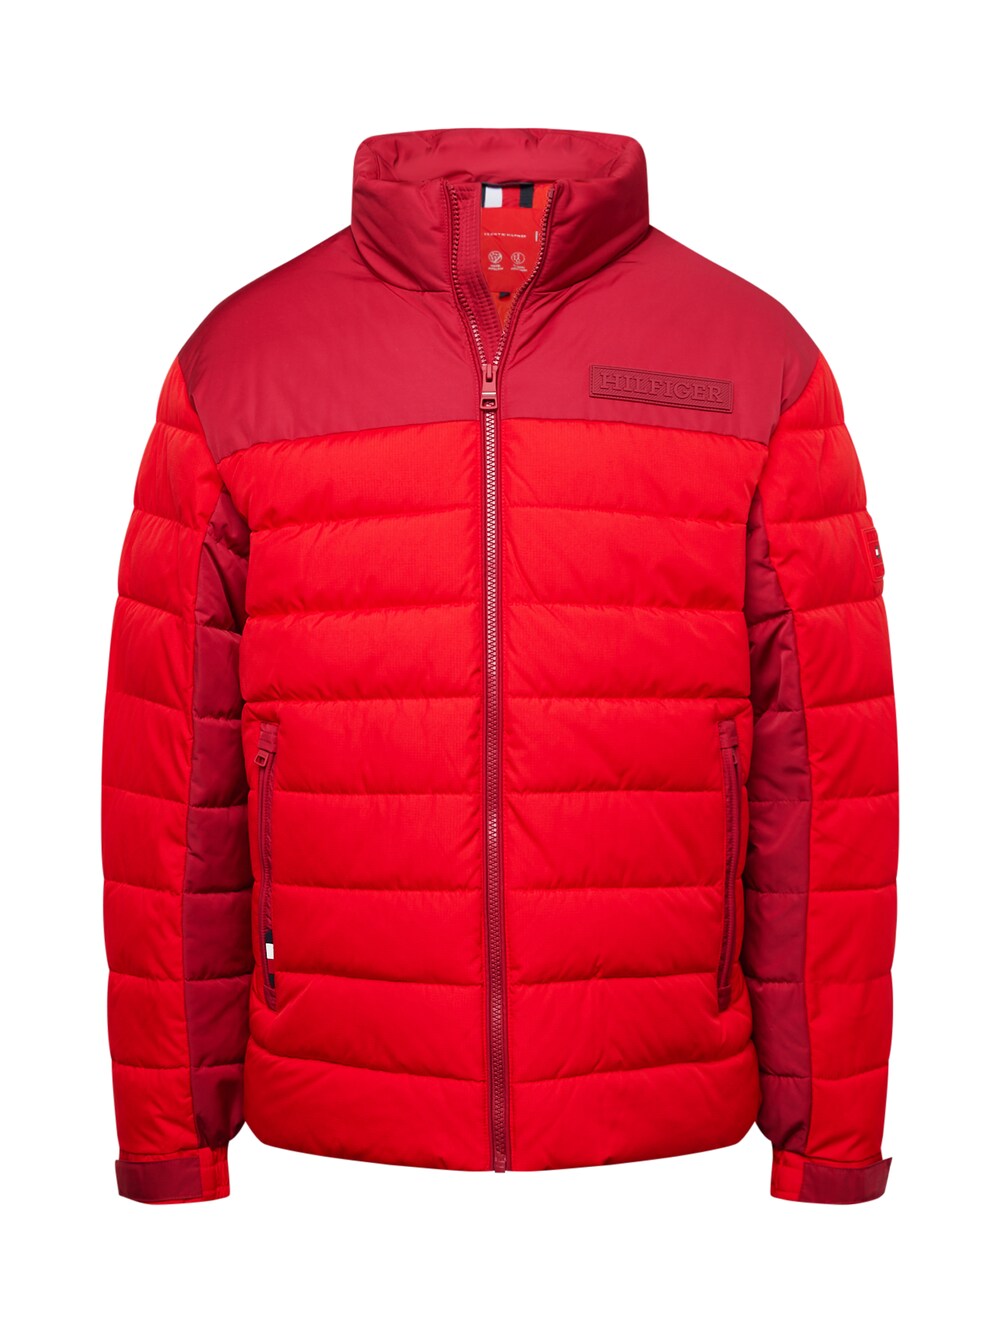 Межсезонная куртка Tommy Hilfiger New York, красный/винно-красный шорты y 3 ft винно красный